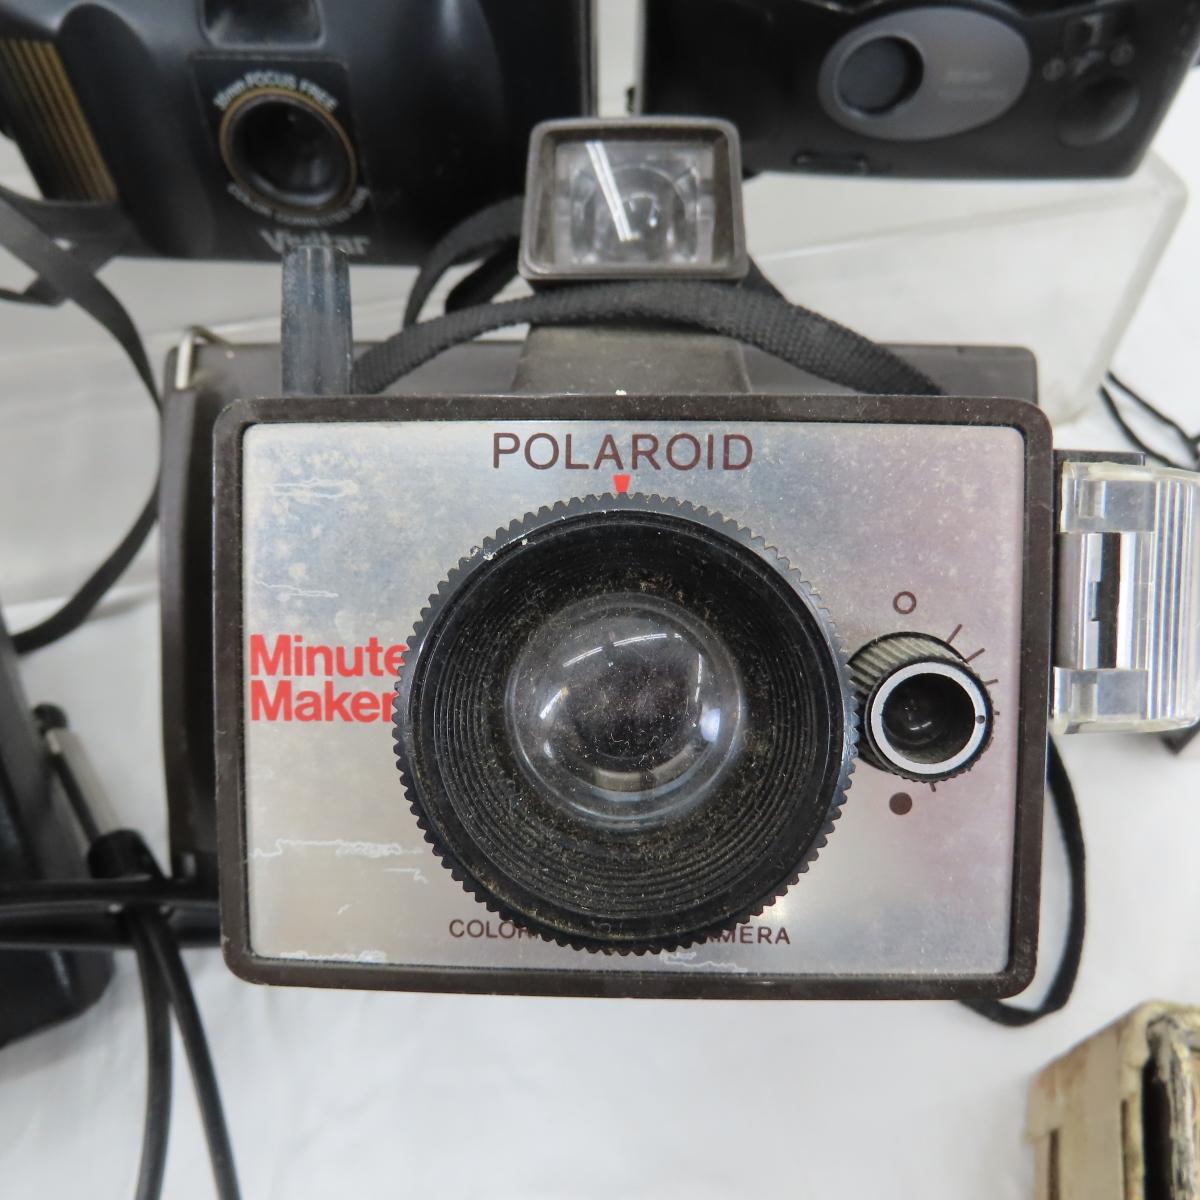 Polaroid Colorpaks, Kodak Brownies & More